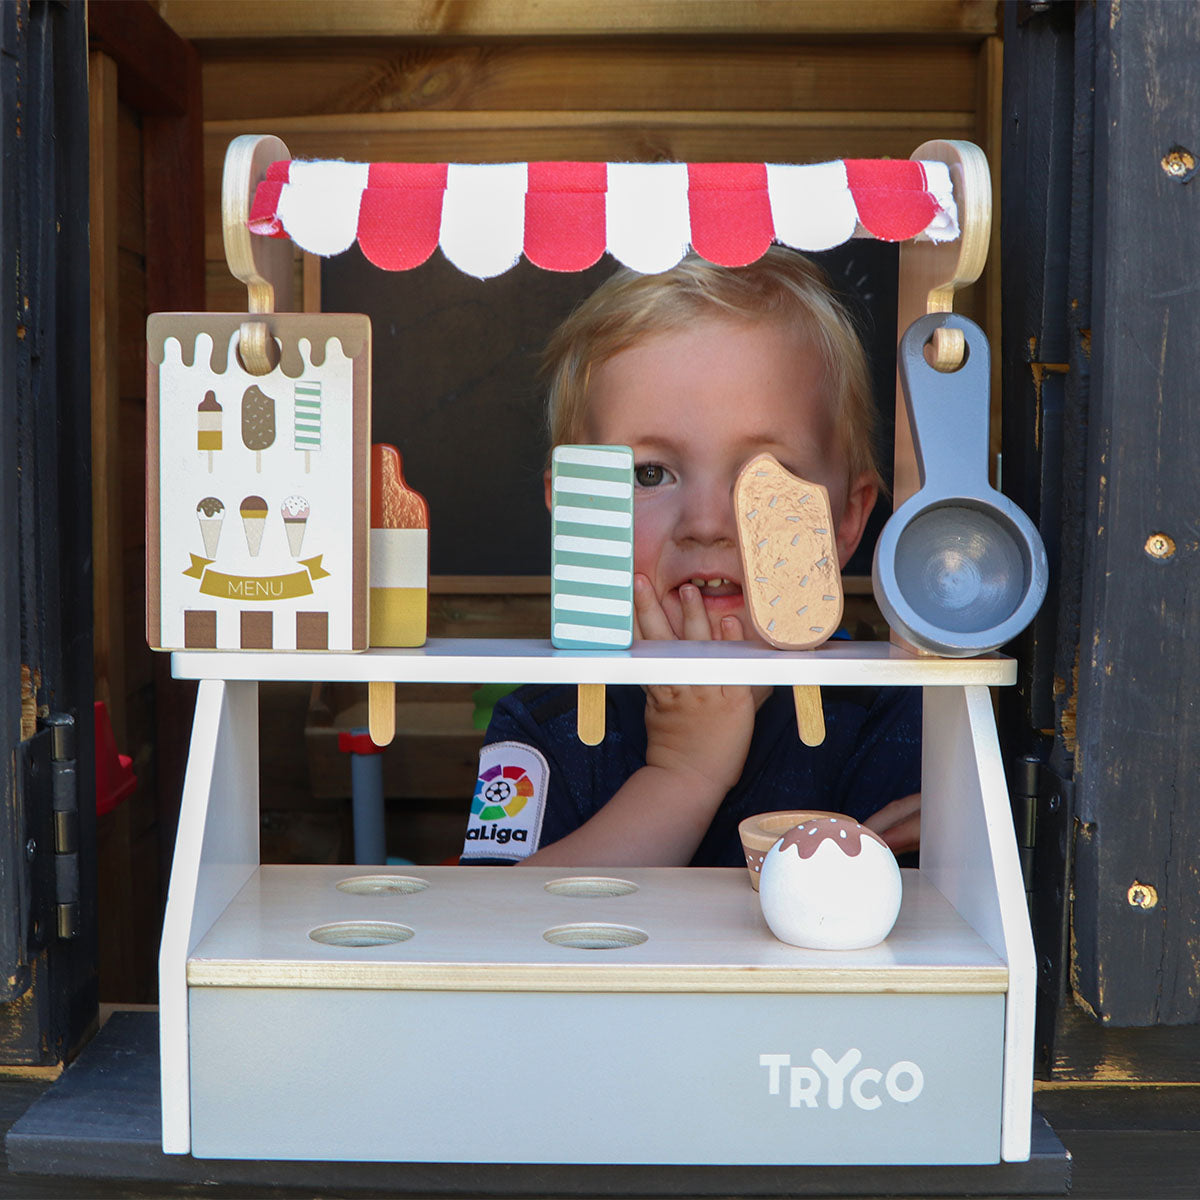 De Tryco ijskraam is het perfecte speelgoed voor een rollenspel van jouw kindje! Een raketje of toch liever schepijs? Bij deze leuke ijskraam is van alles te krijgen. VanZus.